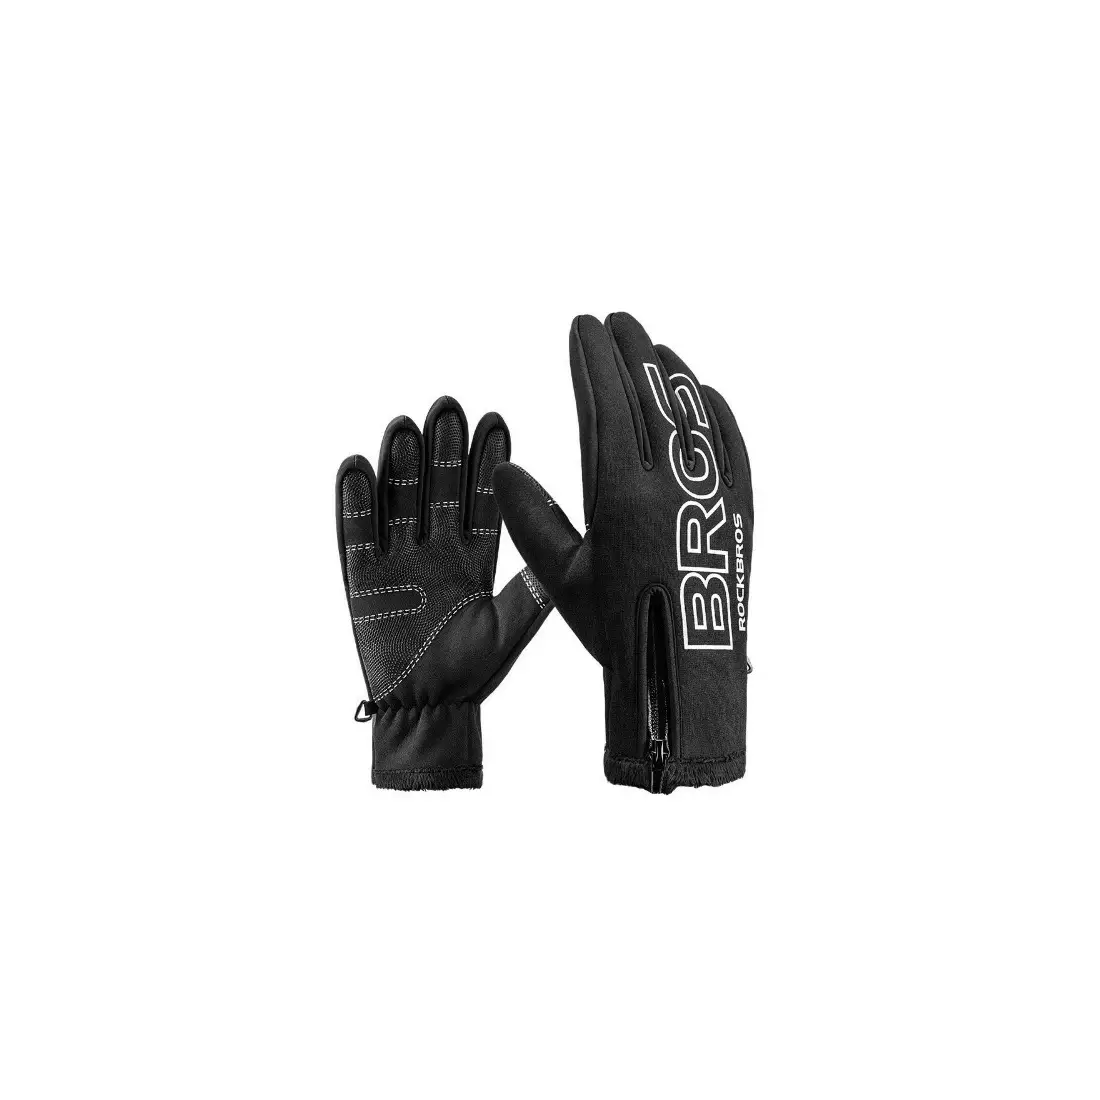 Rockbros zimné softshellové cyklistické rukavice, čierne S091-4BK